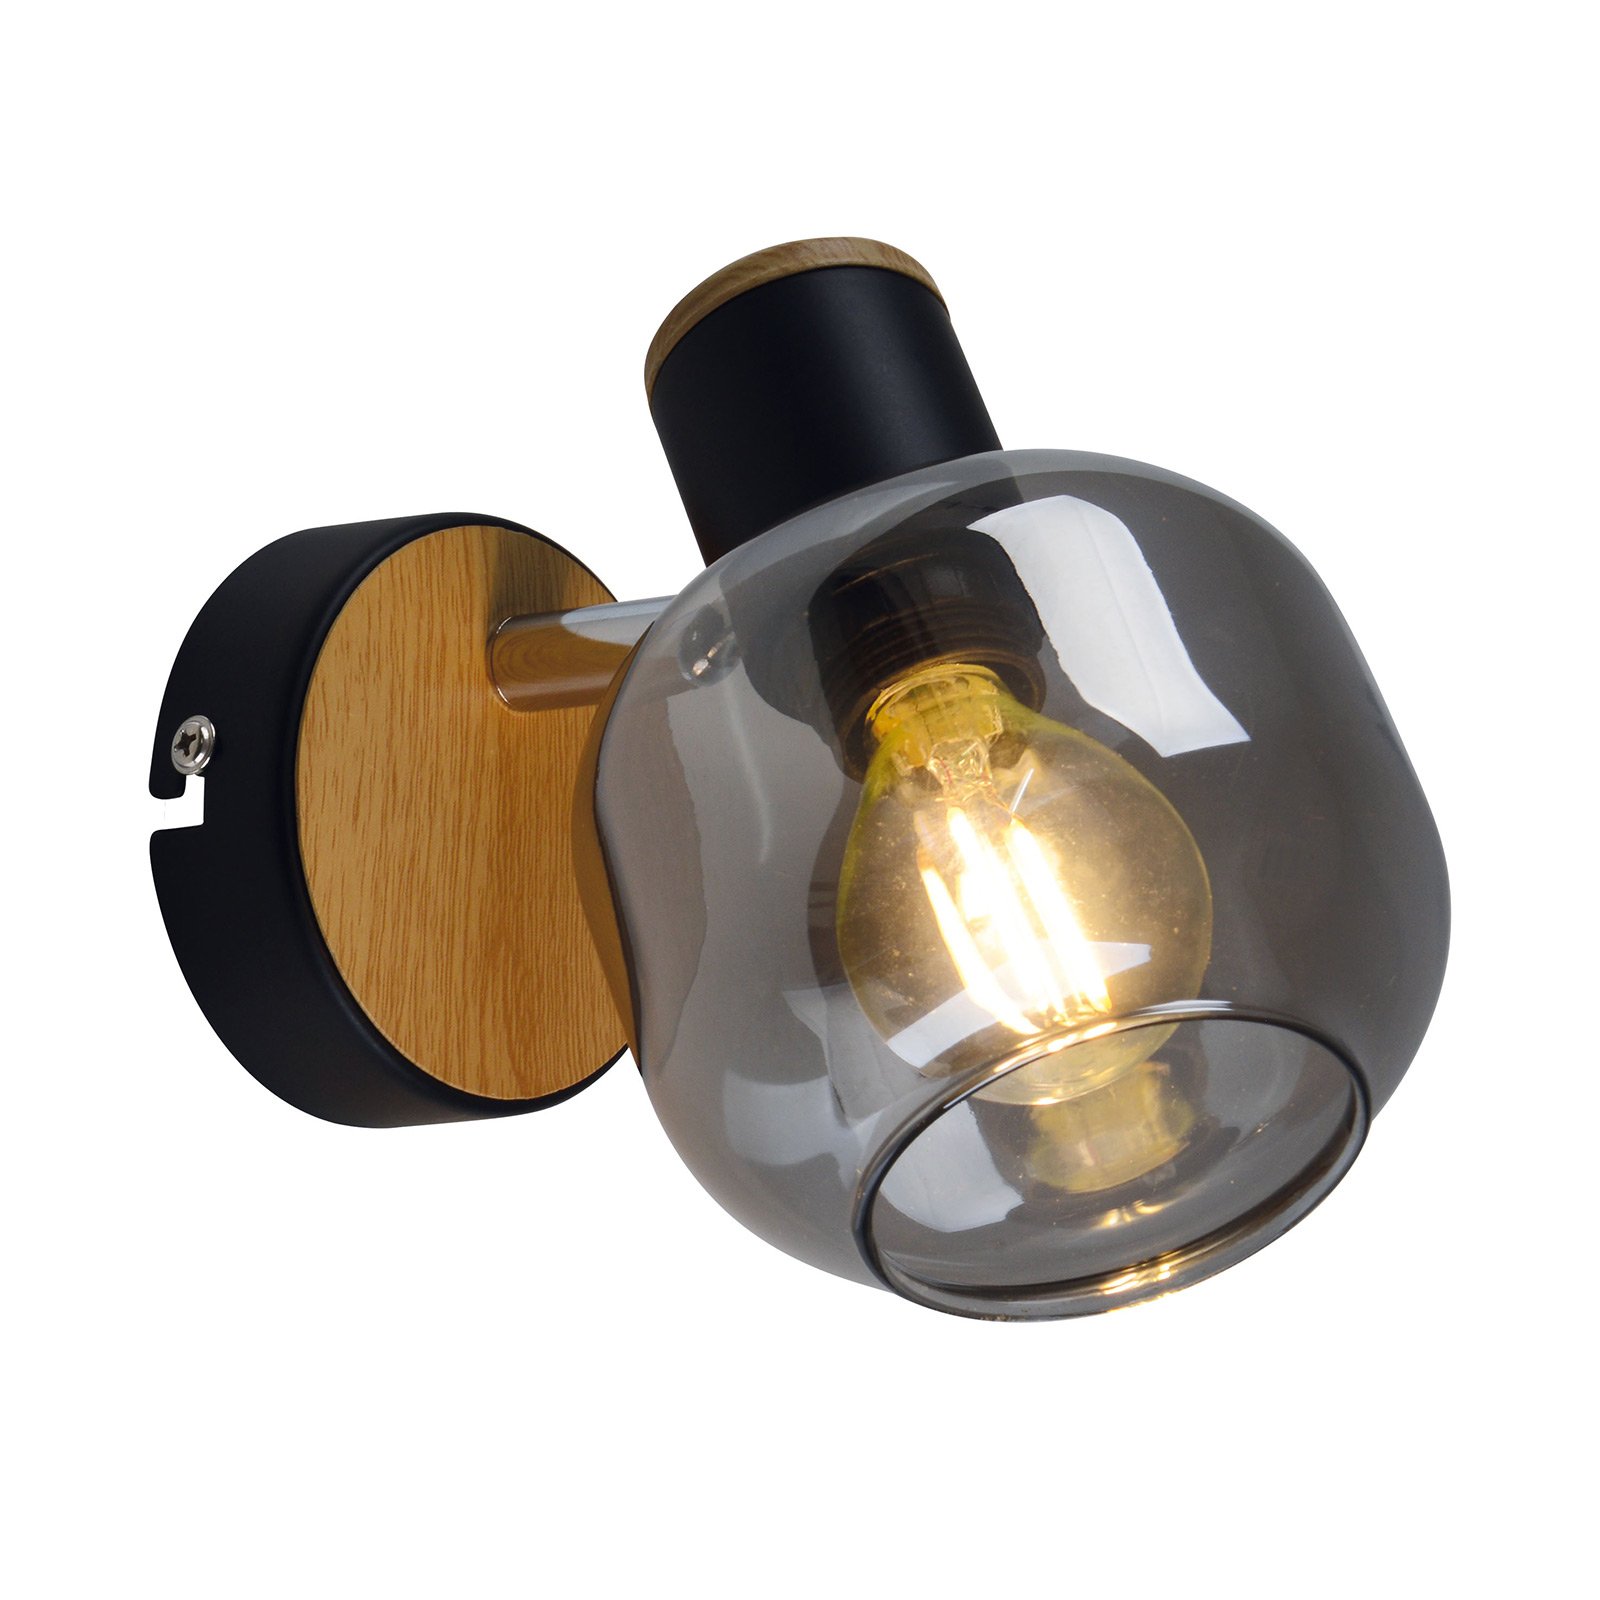 Vägglampa 1350022 med rökglas, 1 lampa